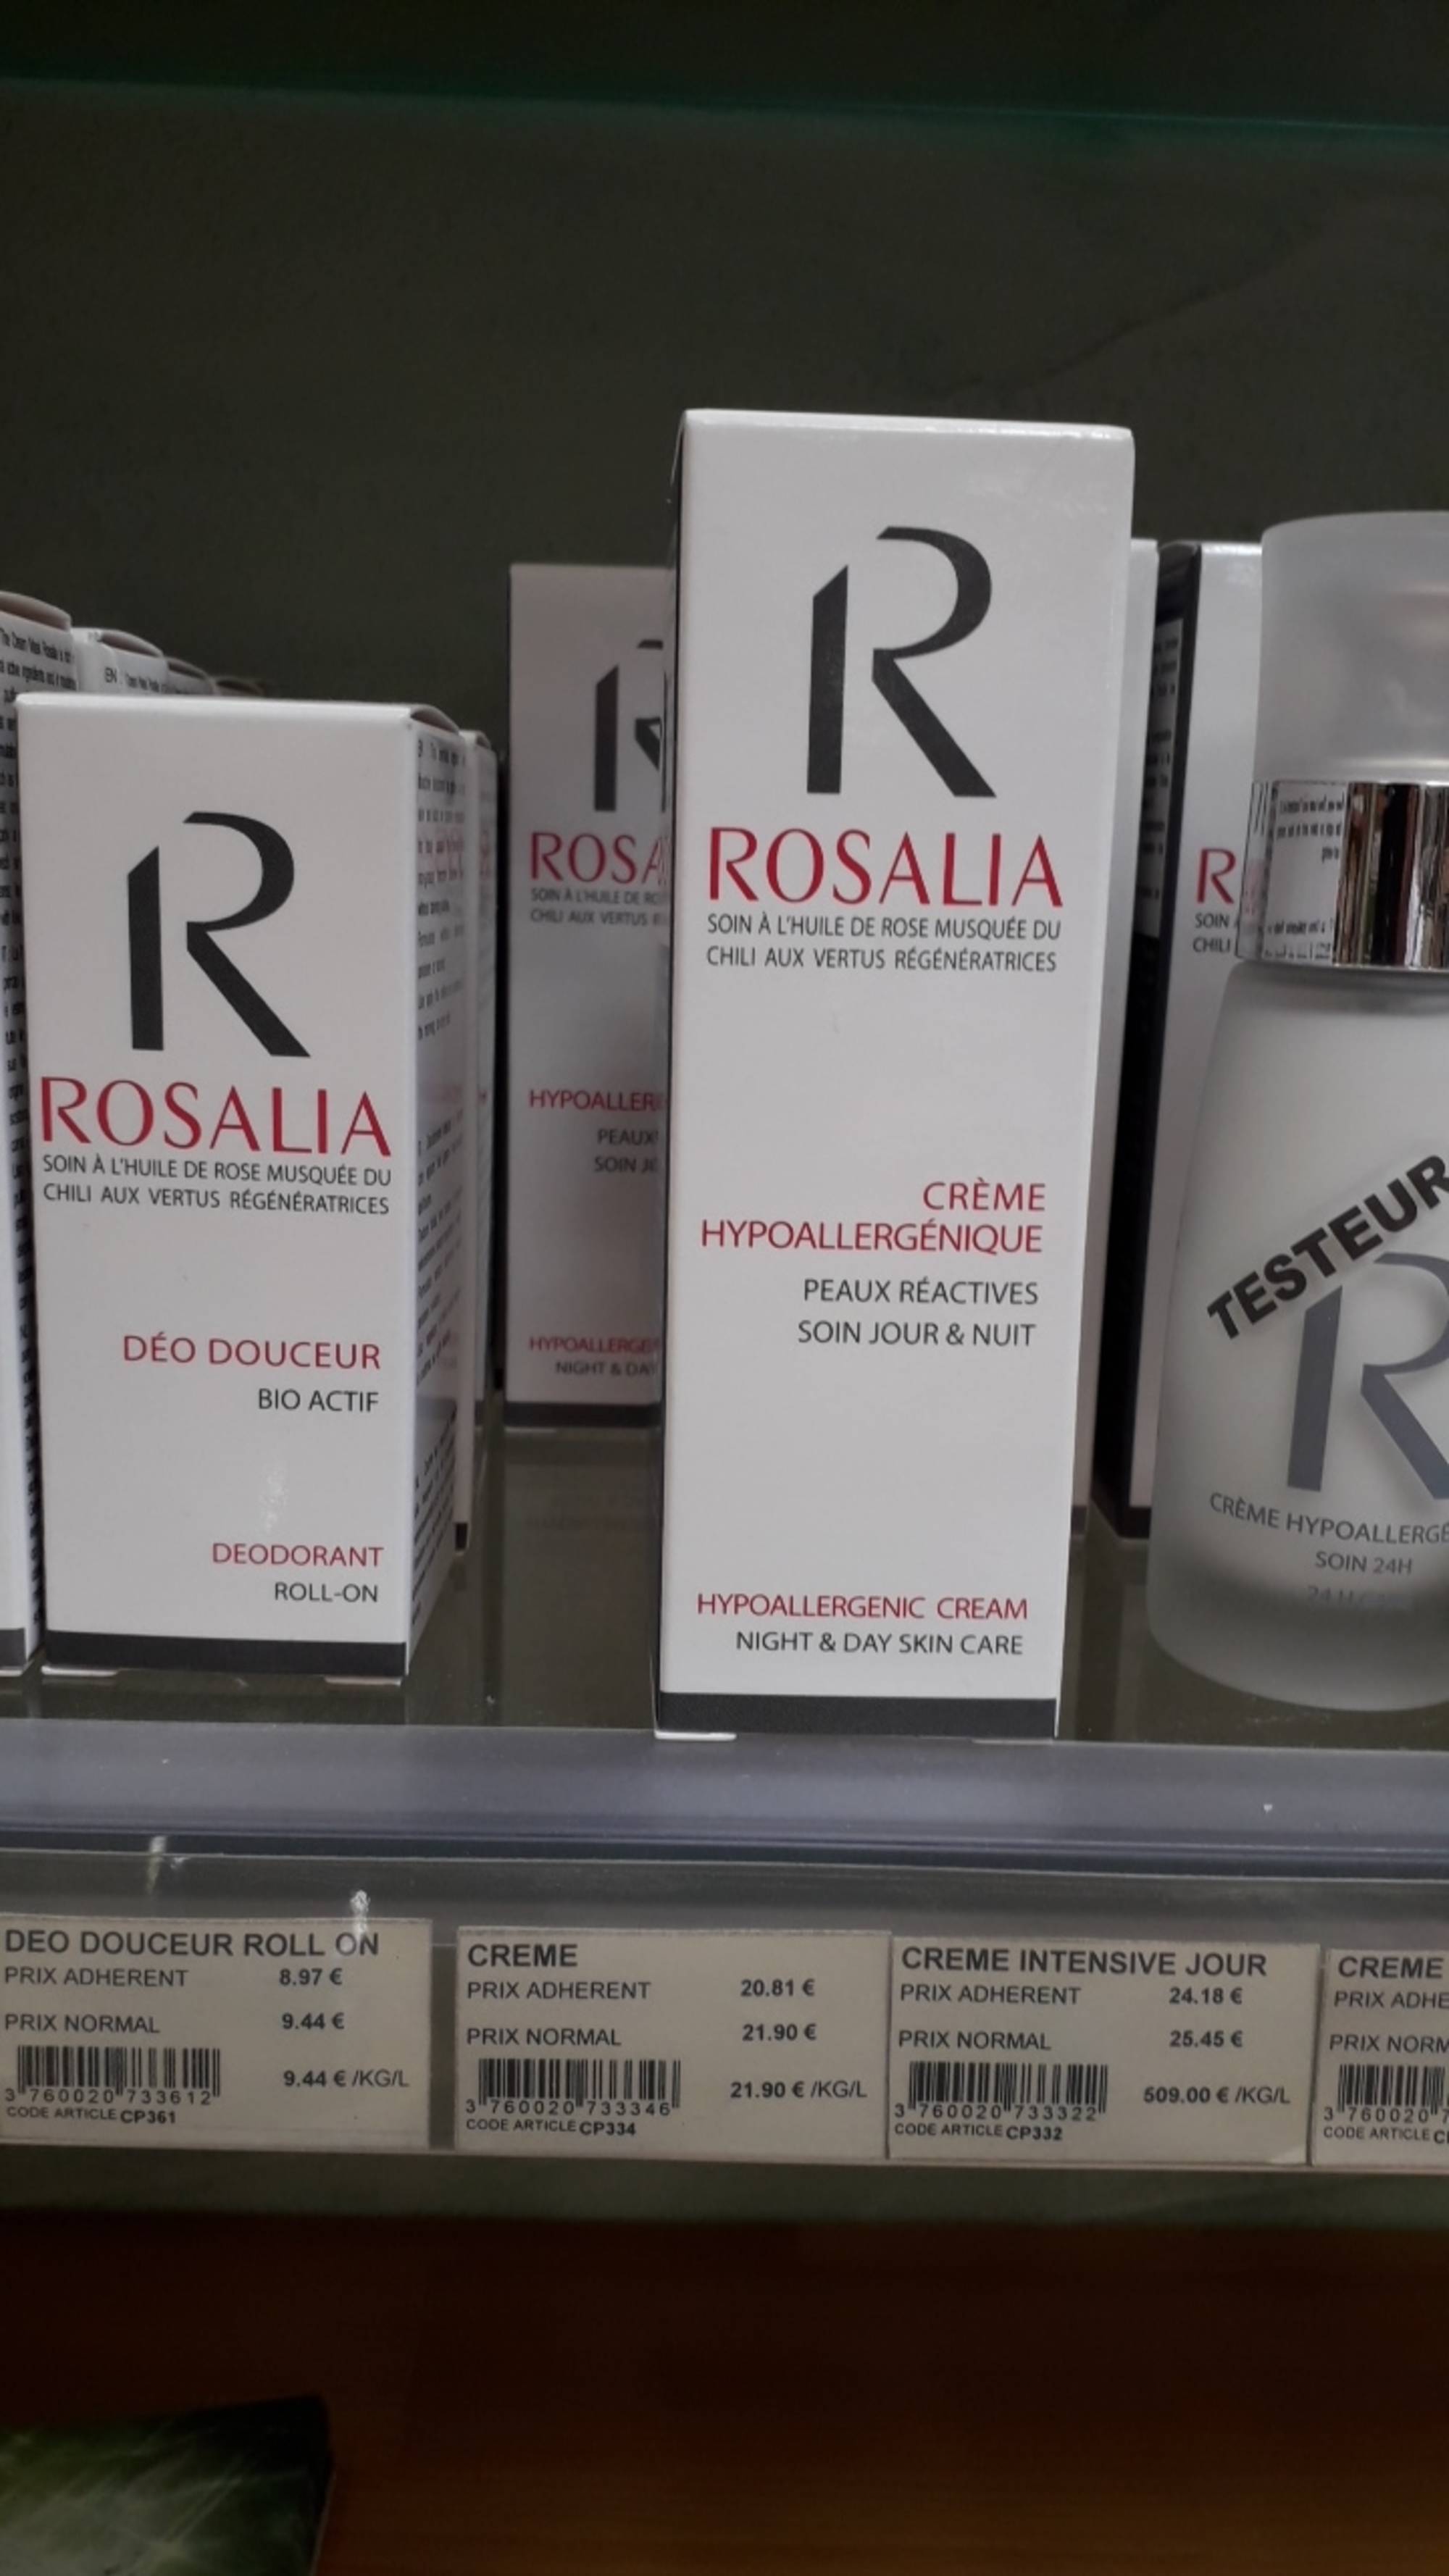 ROSALIA - Crème hypoallergénique - Soin jour & nuit